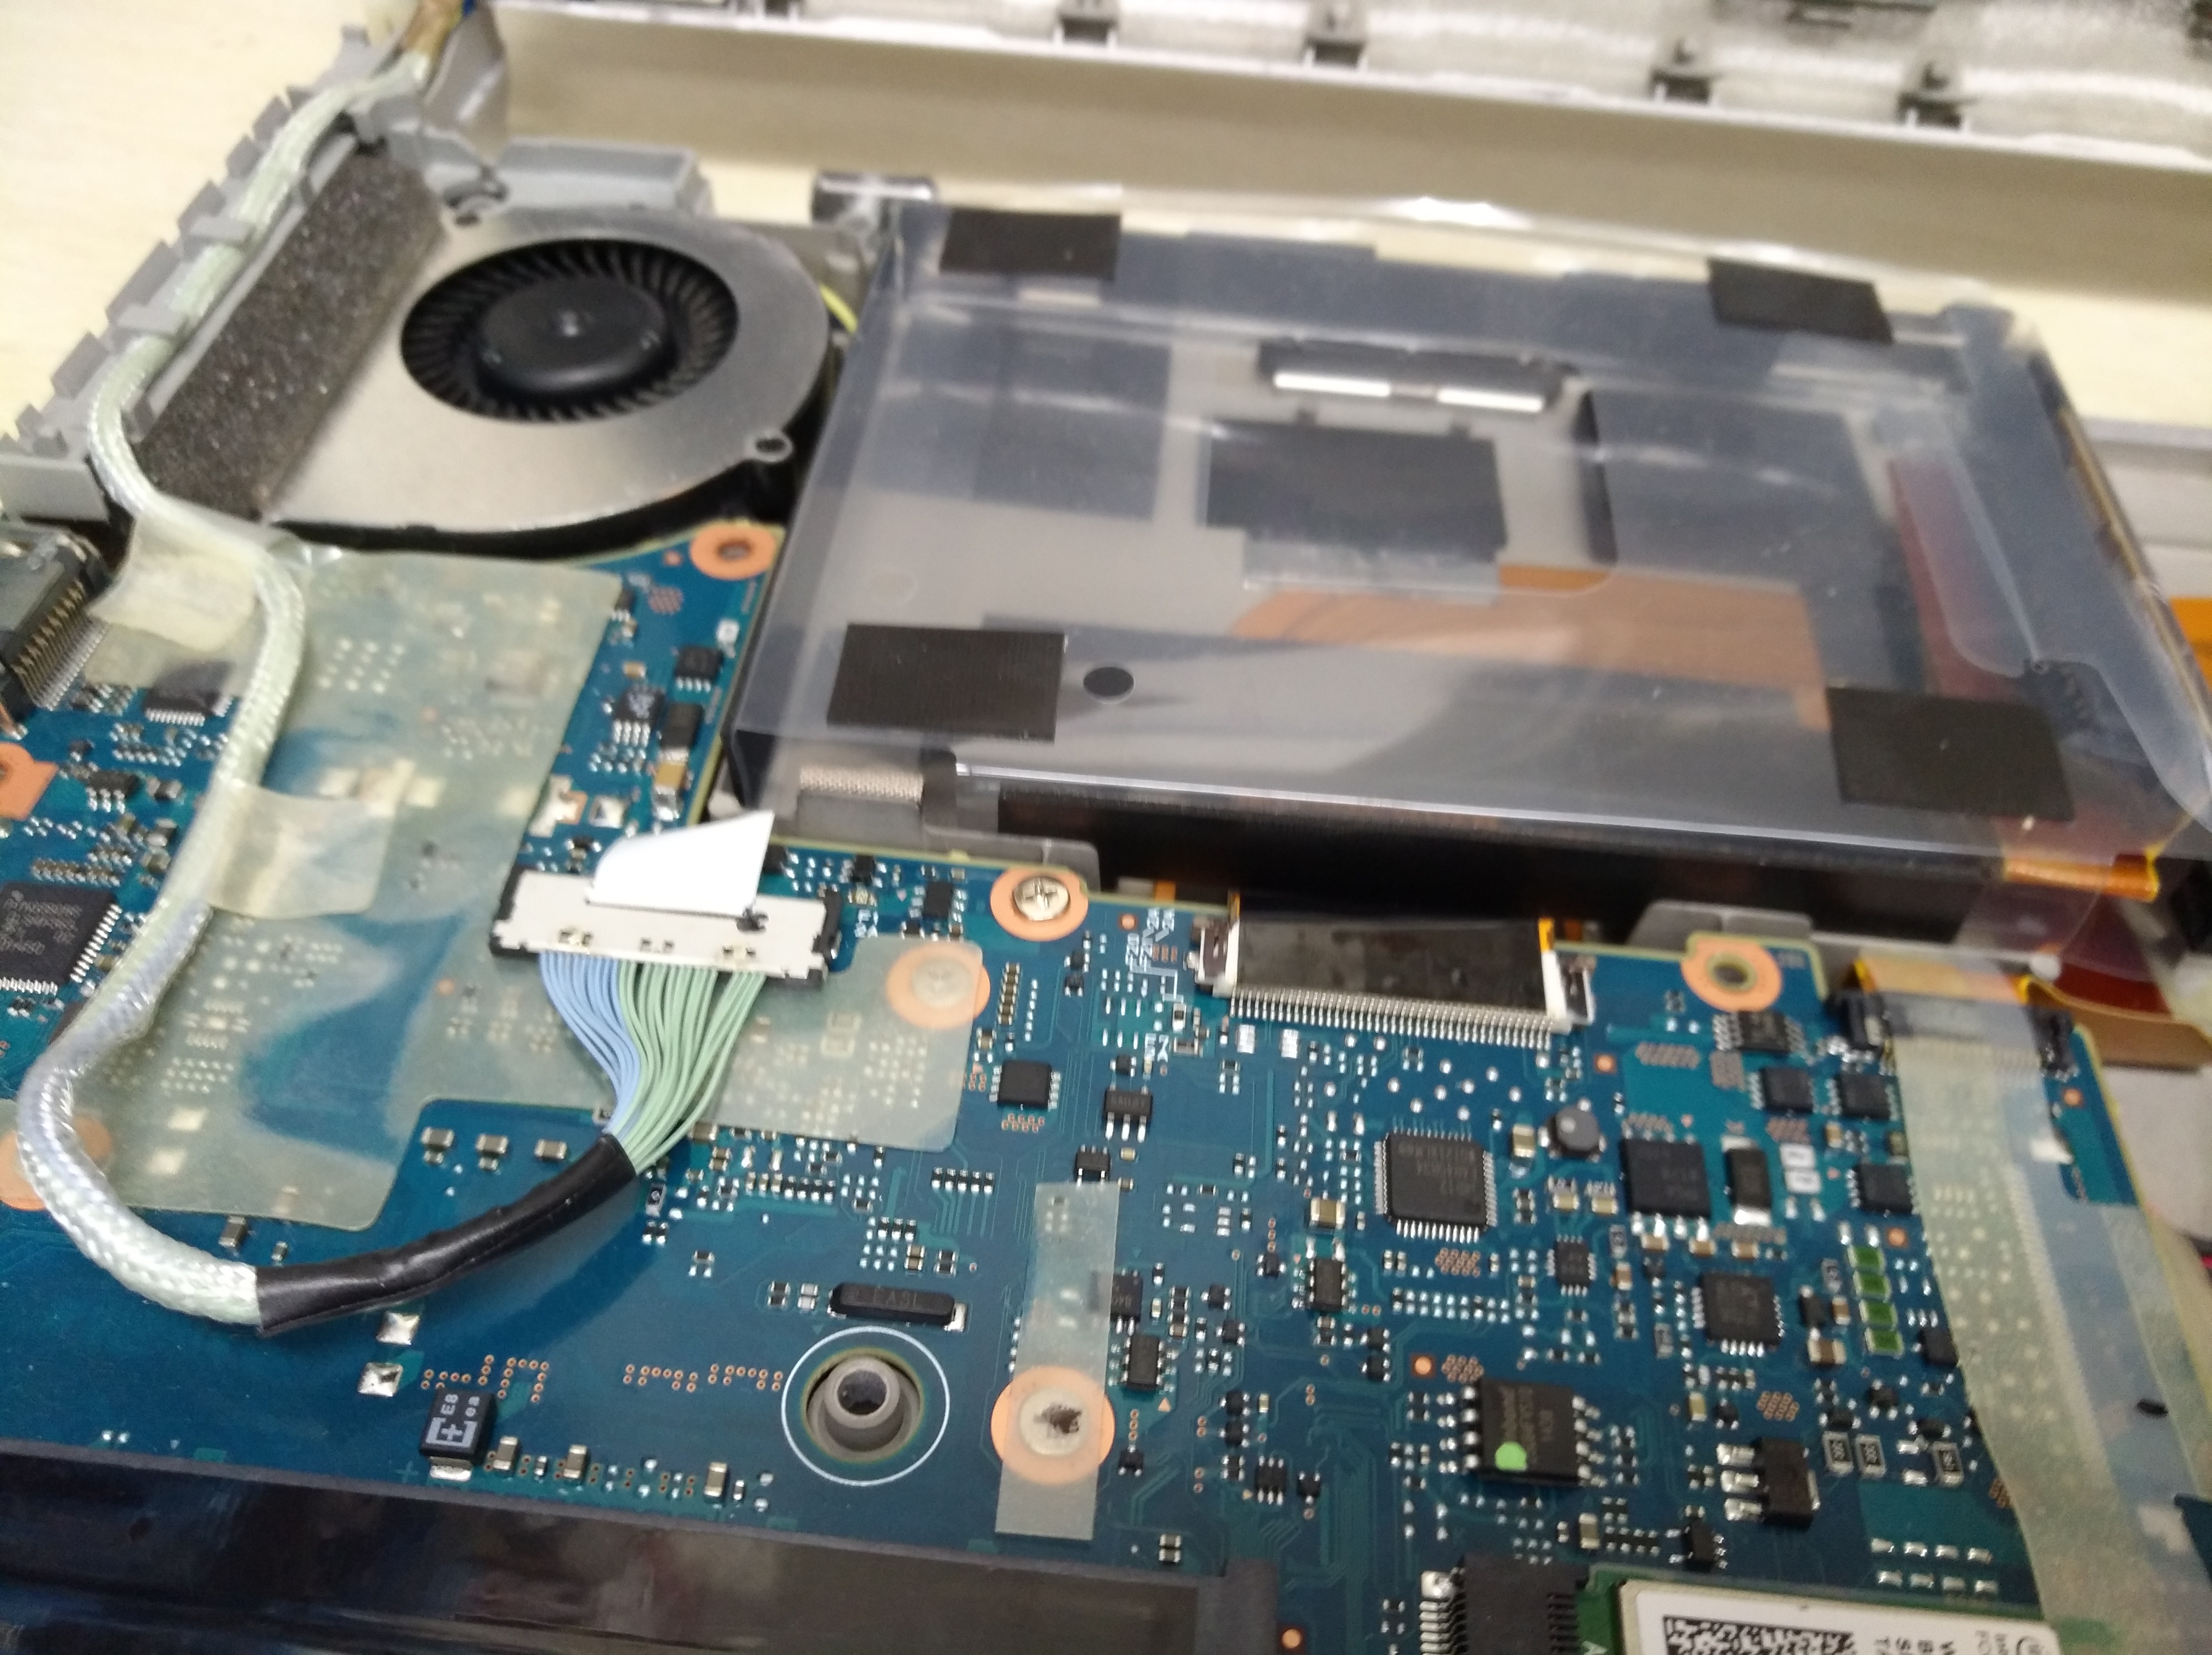 Panasonicのパソコン修理について | 仙台のパソコン修理専門店パソコン 